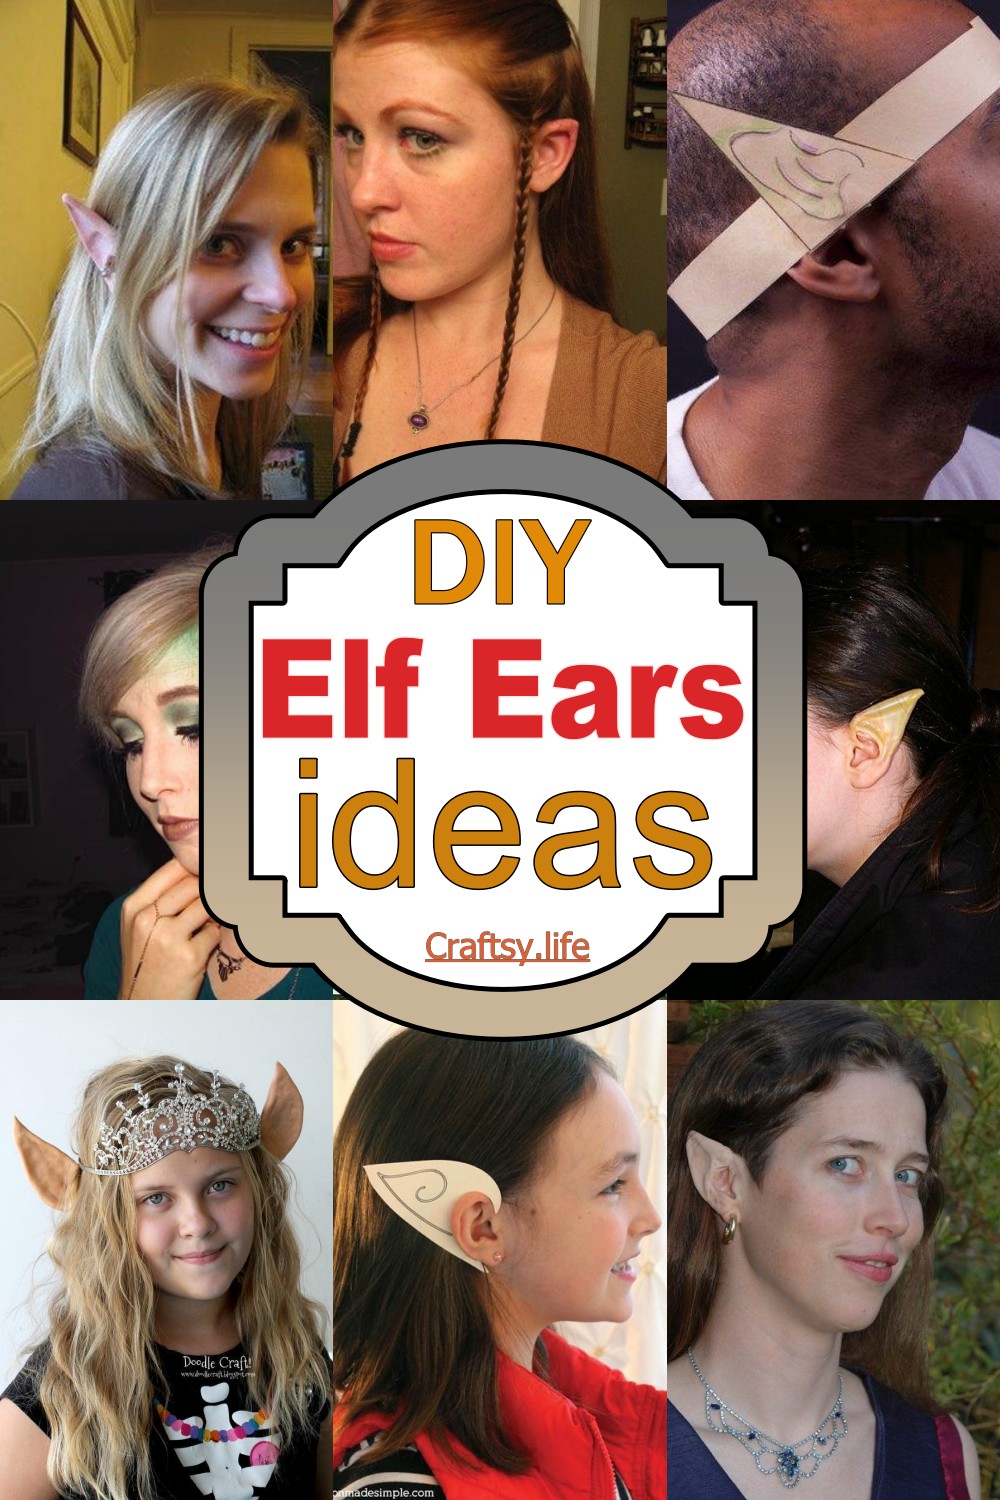  Elf Ears